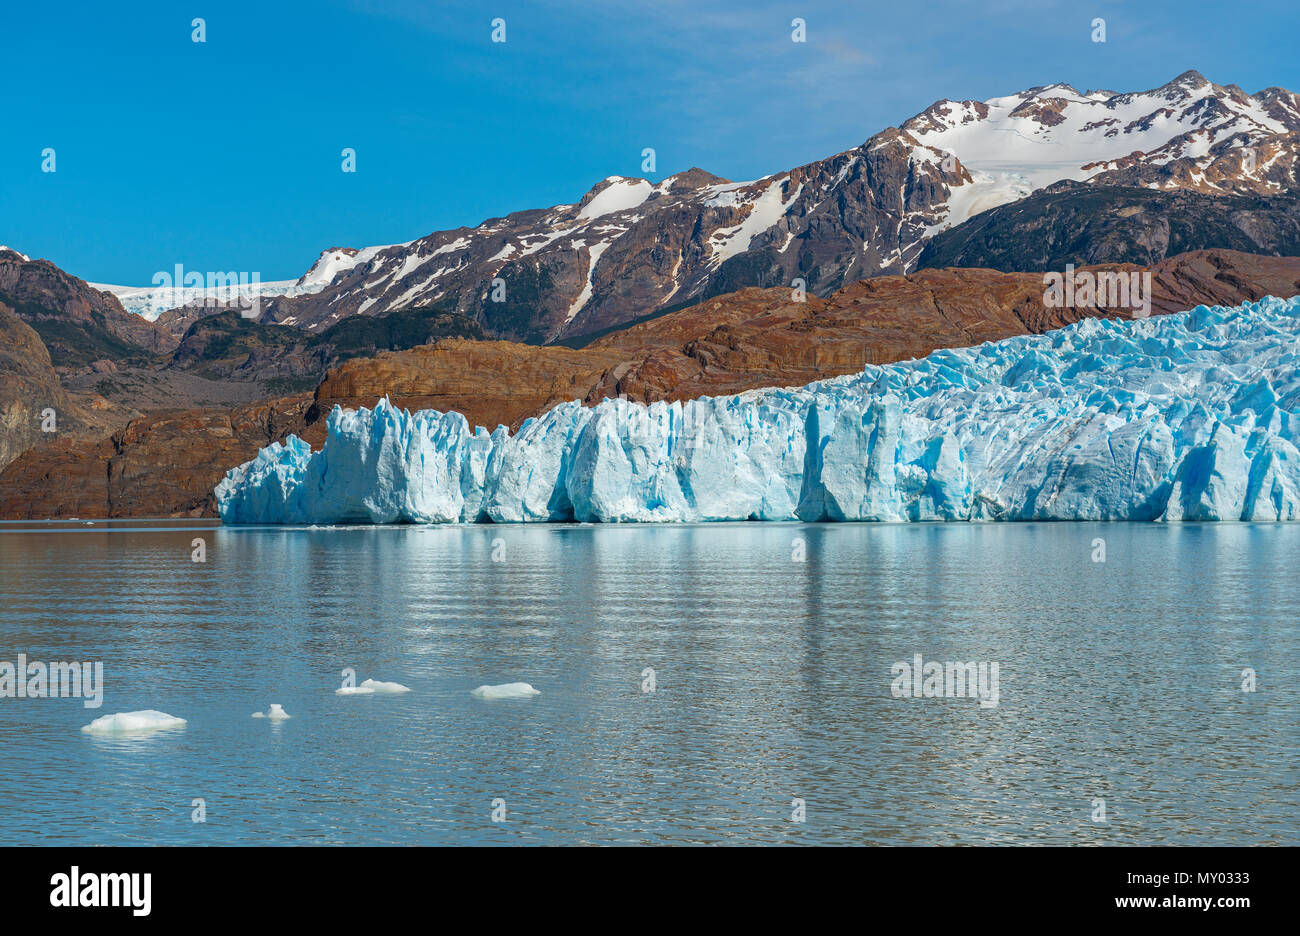 El Glaciar Grey y el Lago Grey con la cordillera de Los Andes en el fondo en el interior del parque nacional Torres del Paine, Patagonia, Chile. Foto de stock